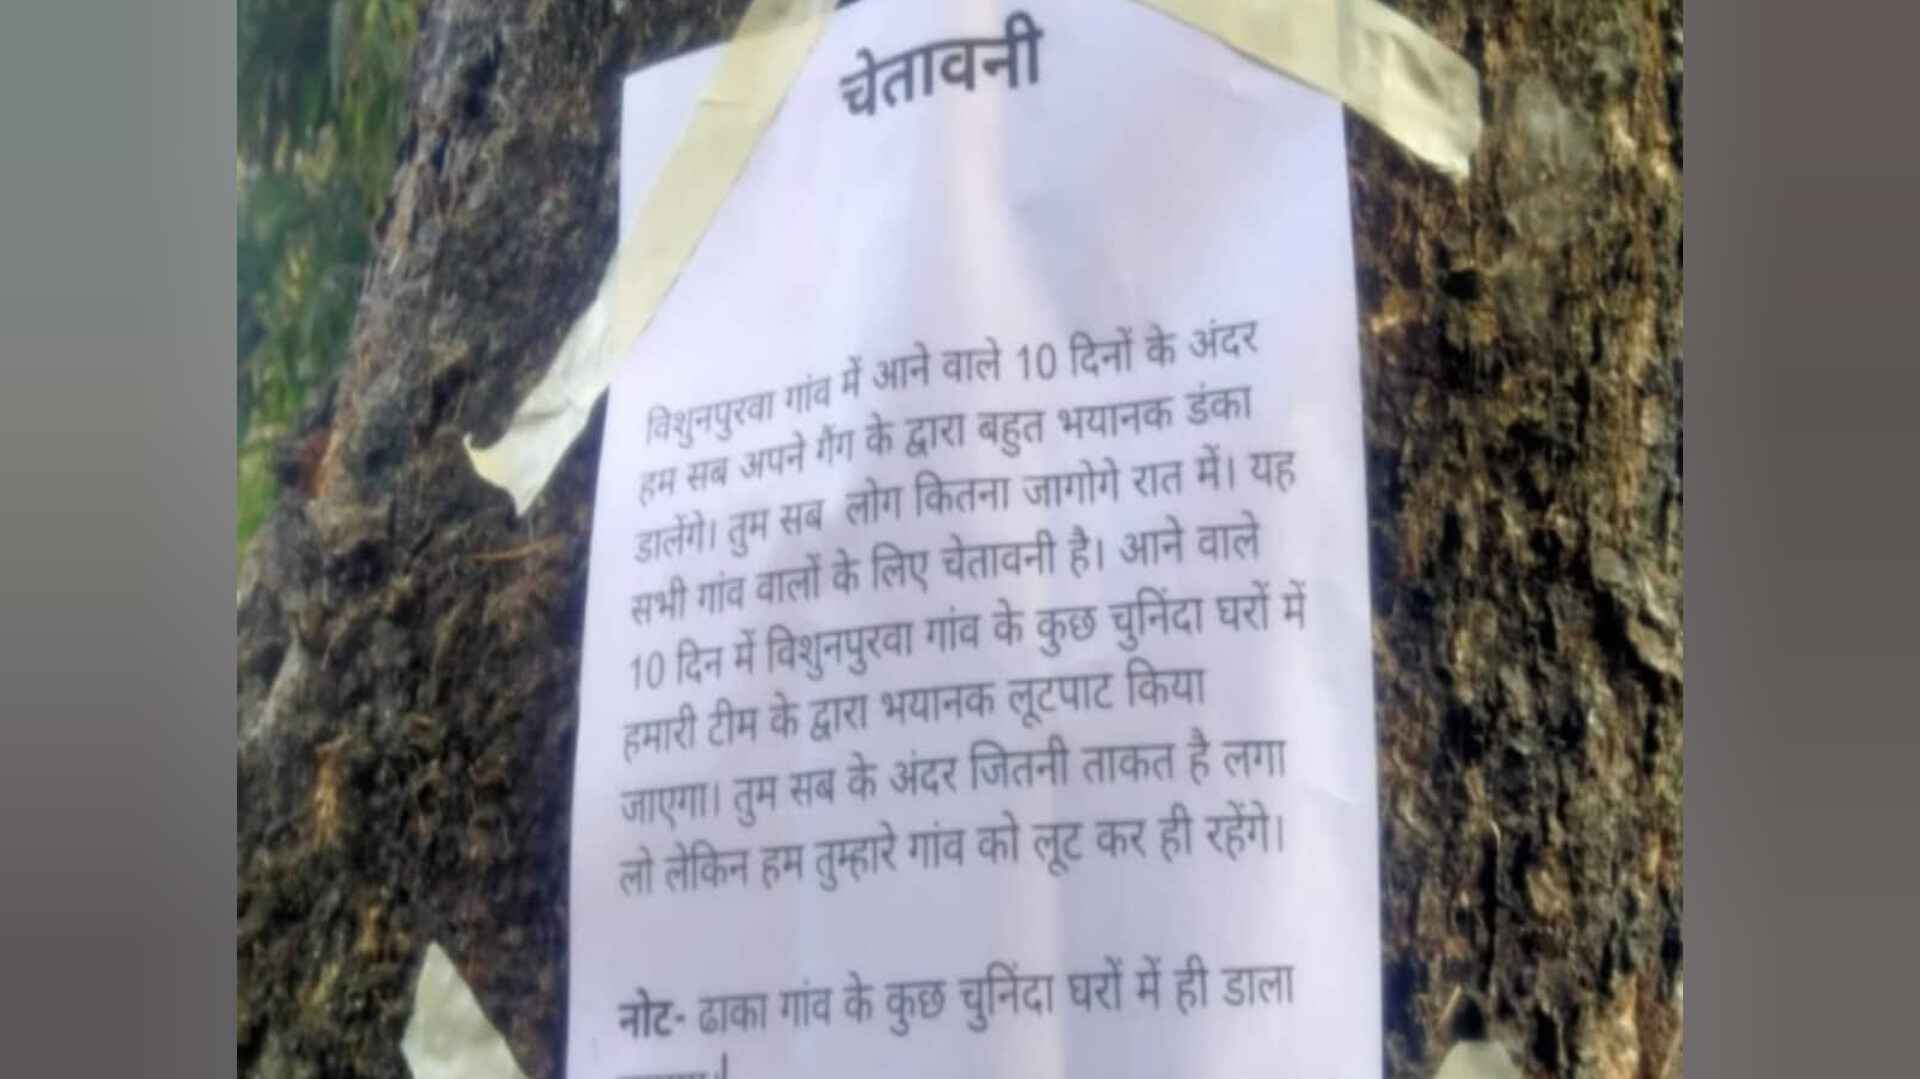 उत्तर प्रदेश के गांव में पहले डकैतों ने लगाए धमकी भरे पोस्टर, फिर की लूटपाट! जानें पूरा मामला